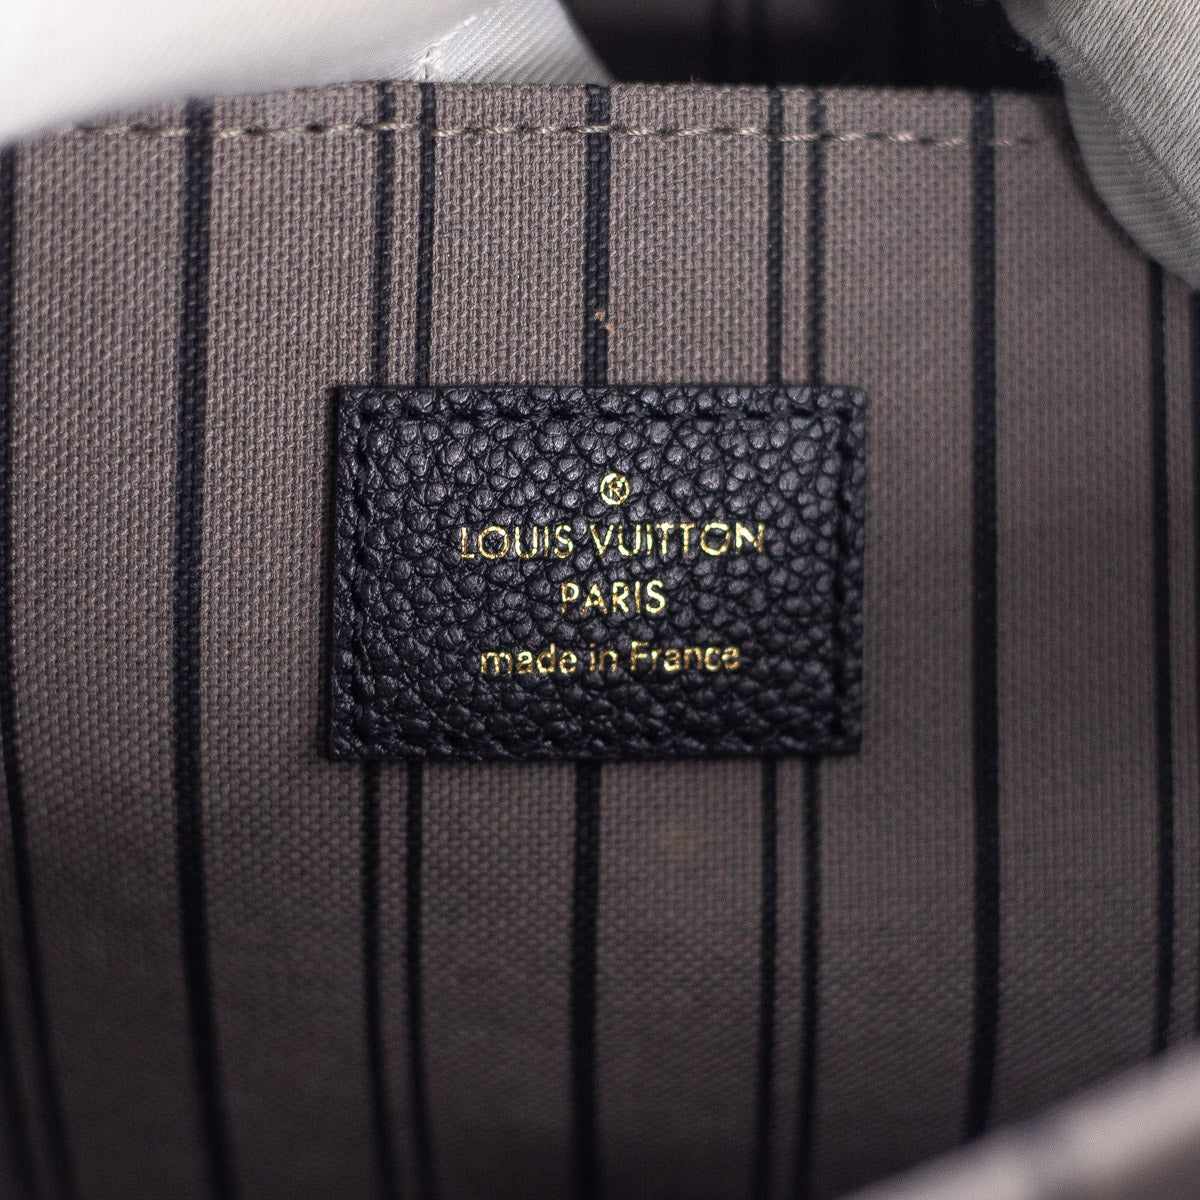 UNBOXING: Louis Vuitton Pochette Métis Monogram Empreinte in Noir